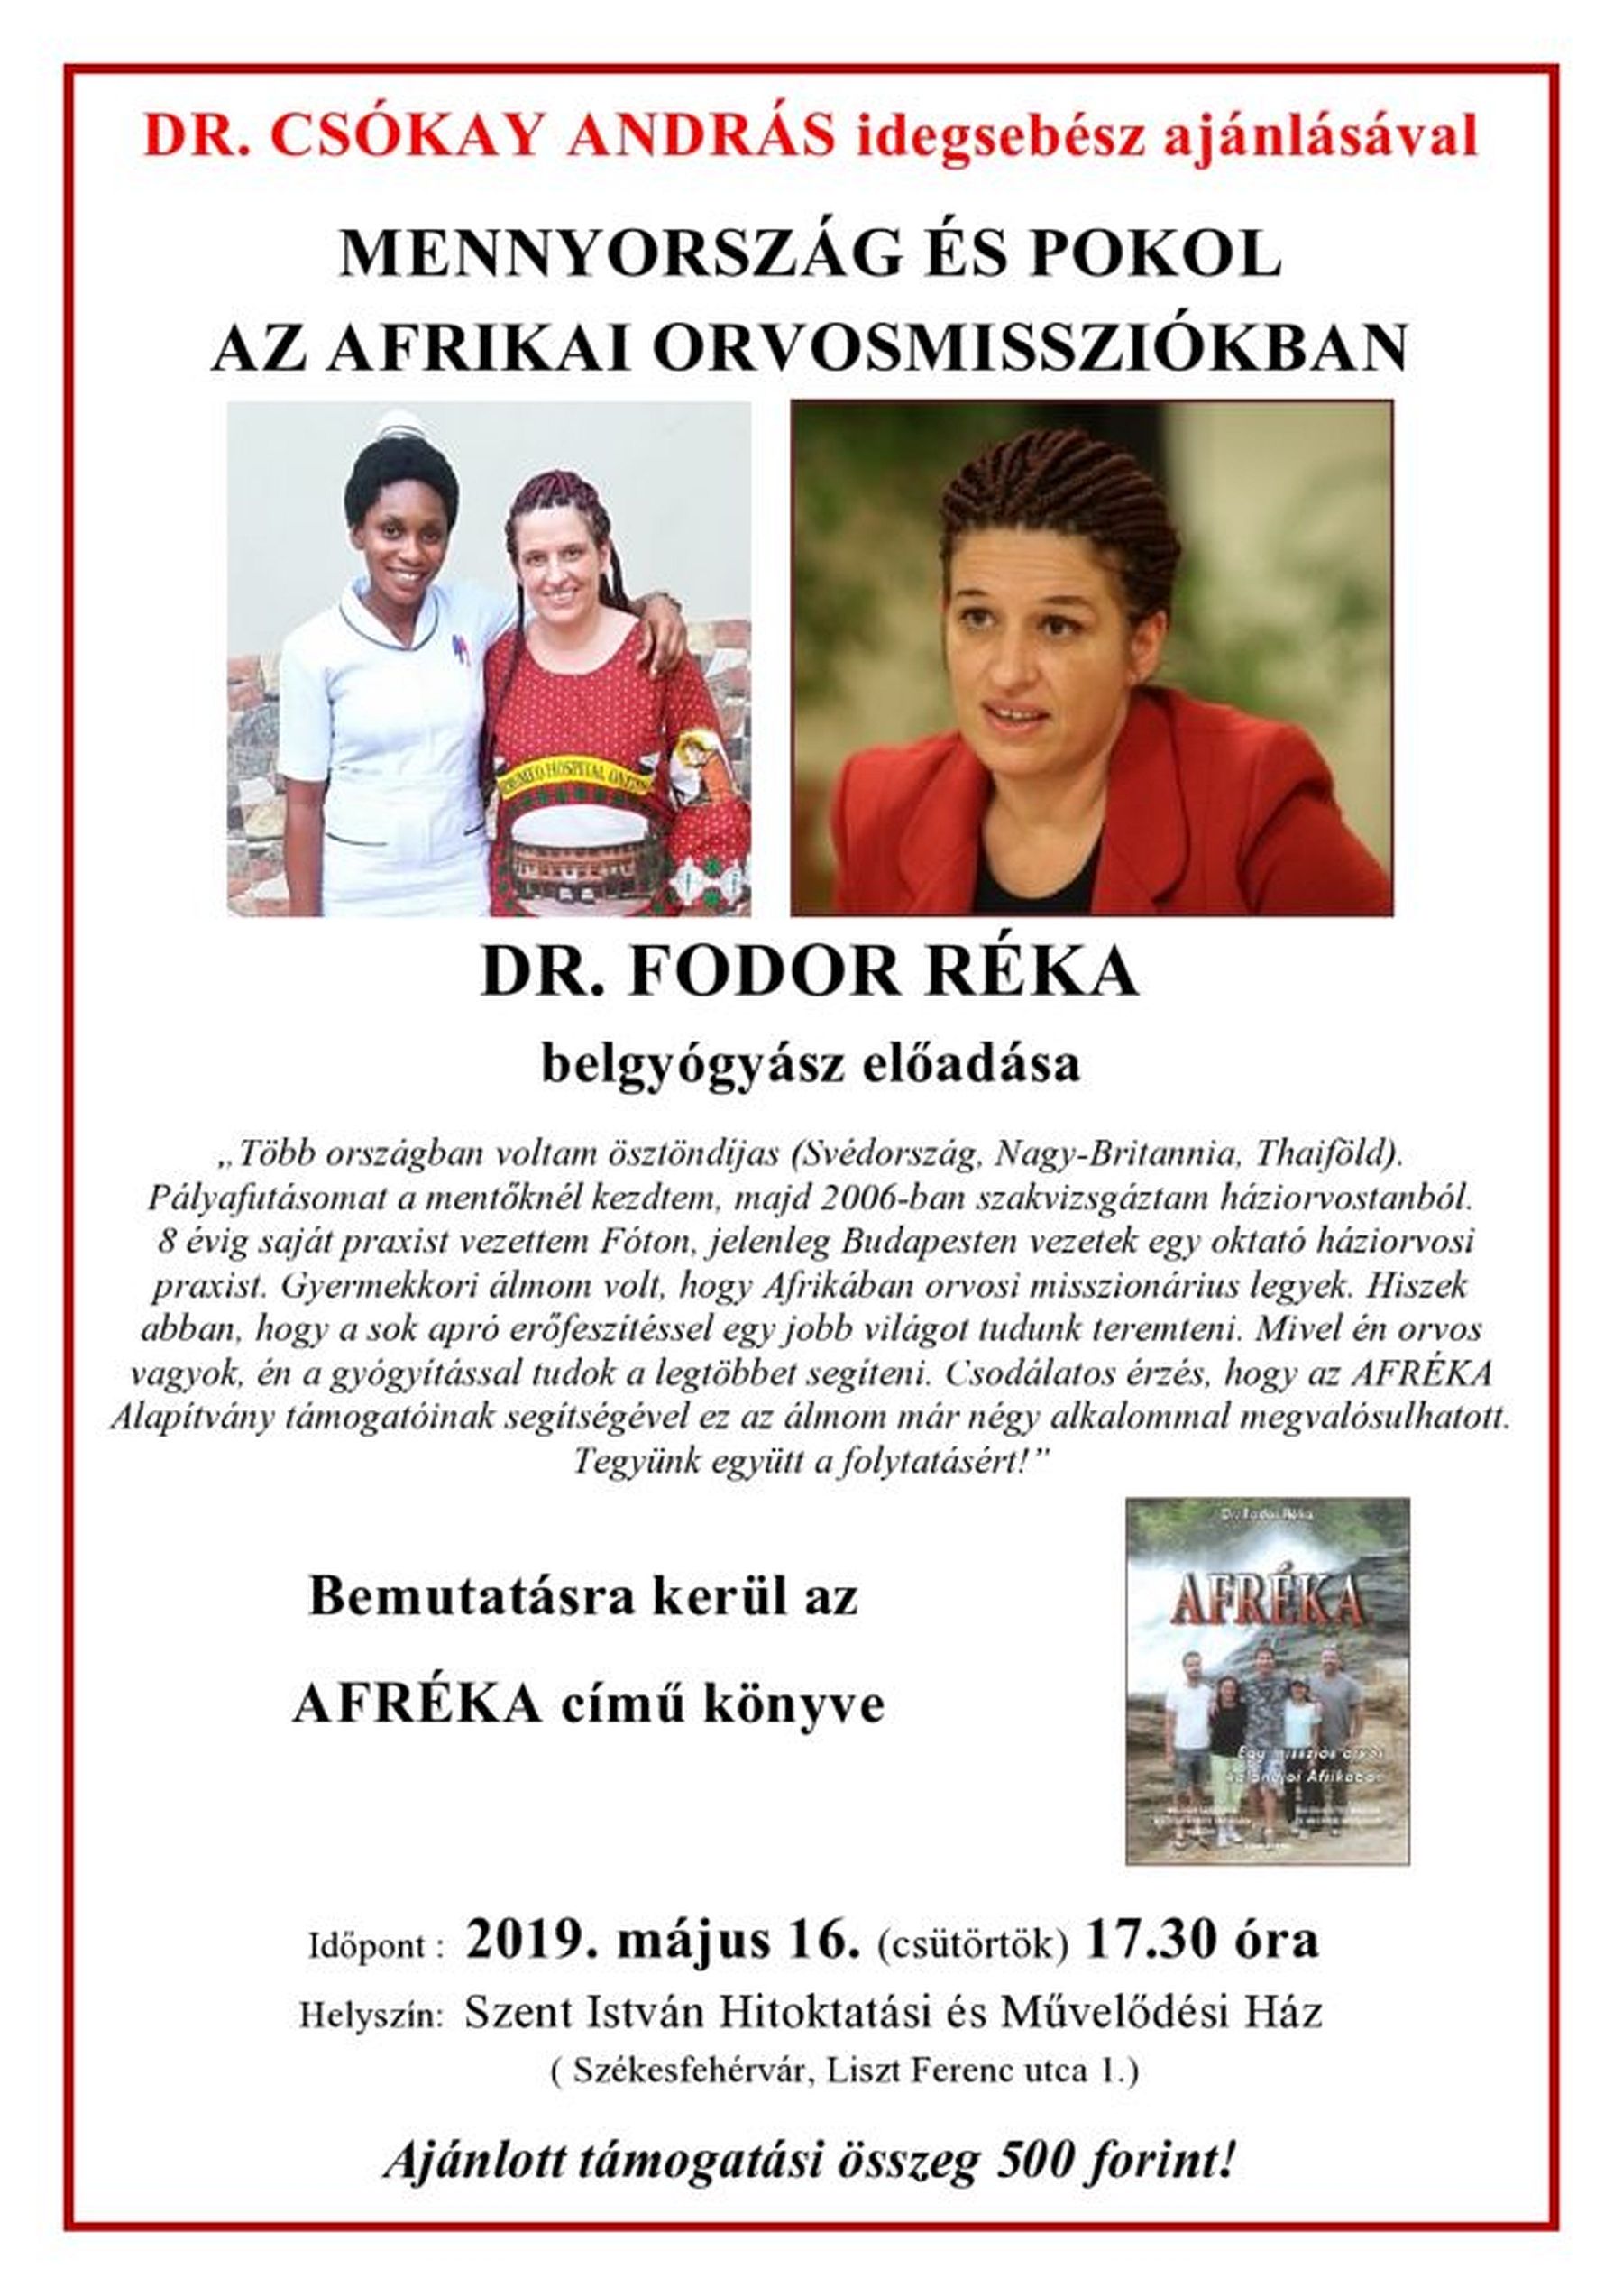 Menny és pokol az afrikai orvosmisszióban - dr. Fodor Réka, belgyógyász előadása